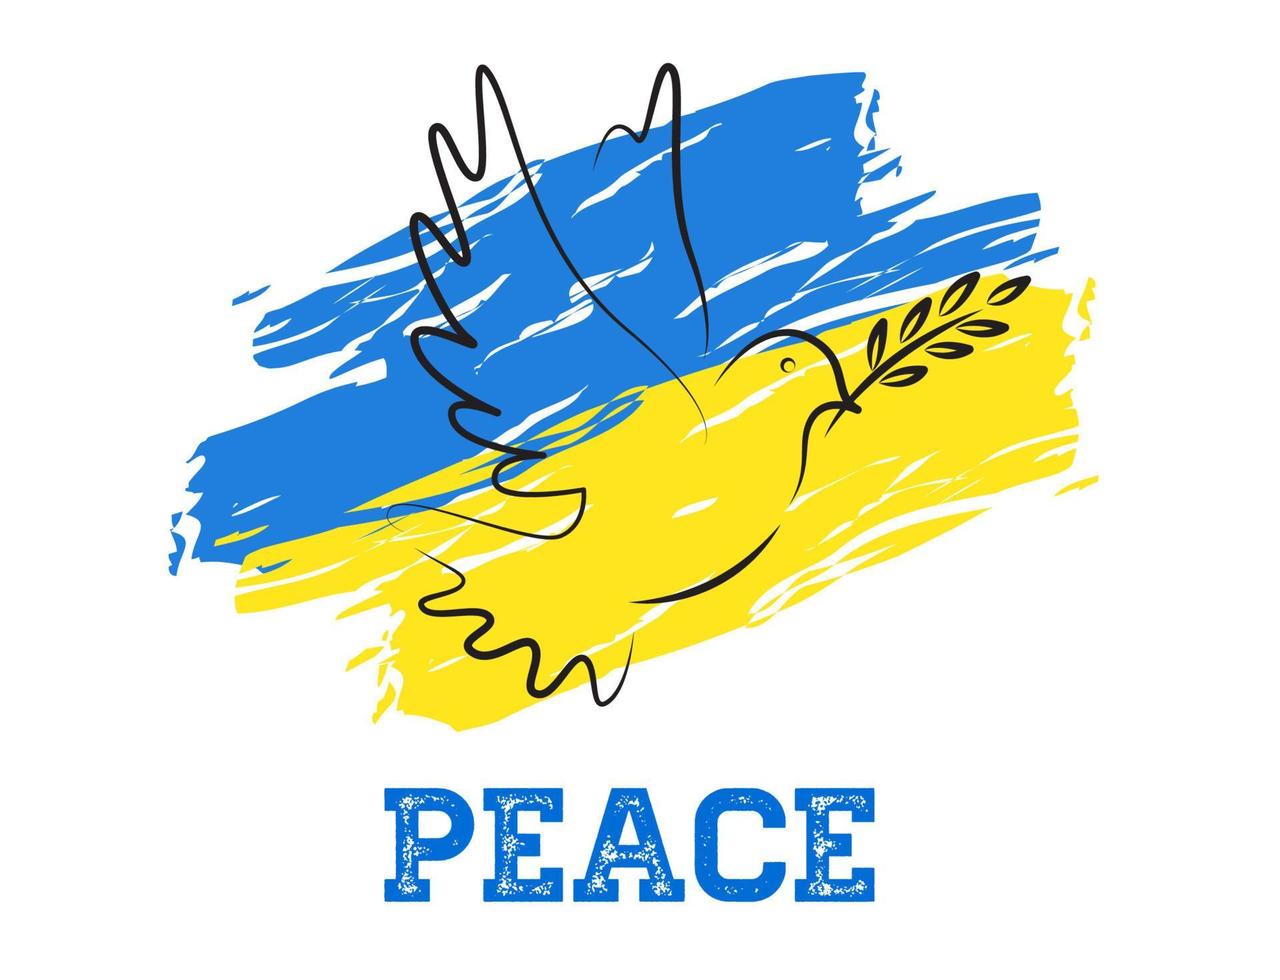 stoppen sie krieg, frieden, taubenzeichen, strahl für ukraine, ukraine-flaggenkonzept-vektorillustration vektor